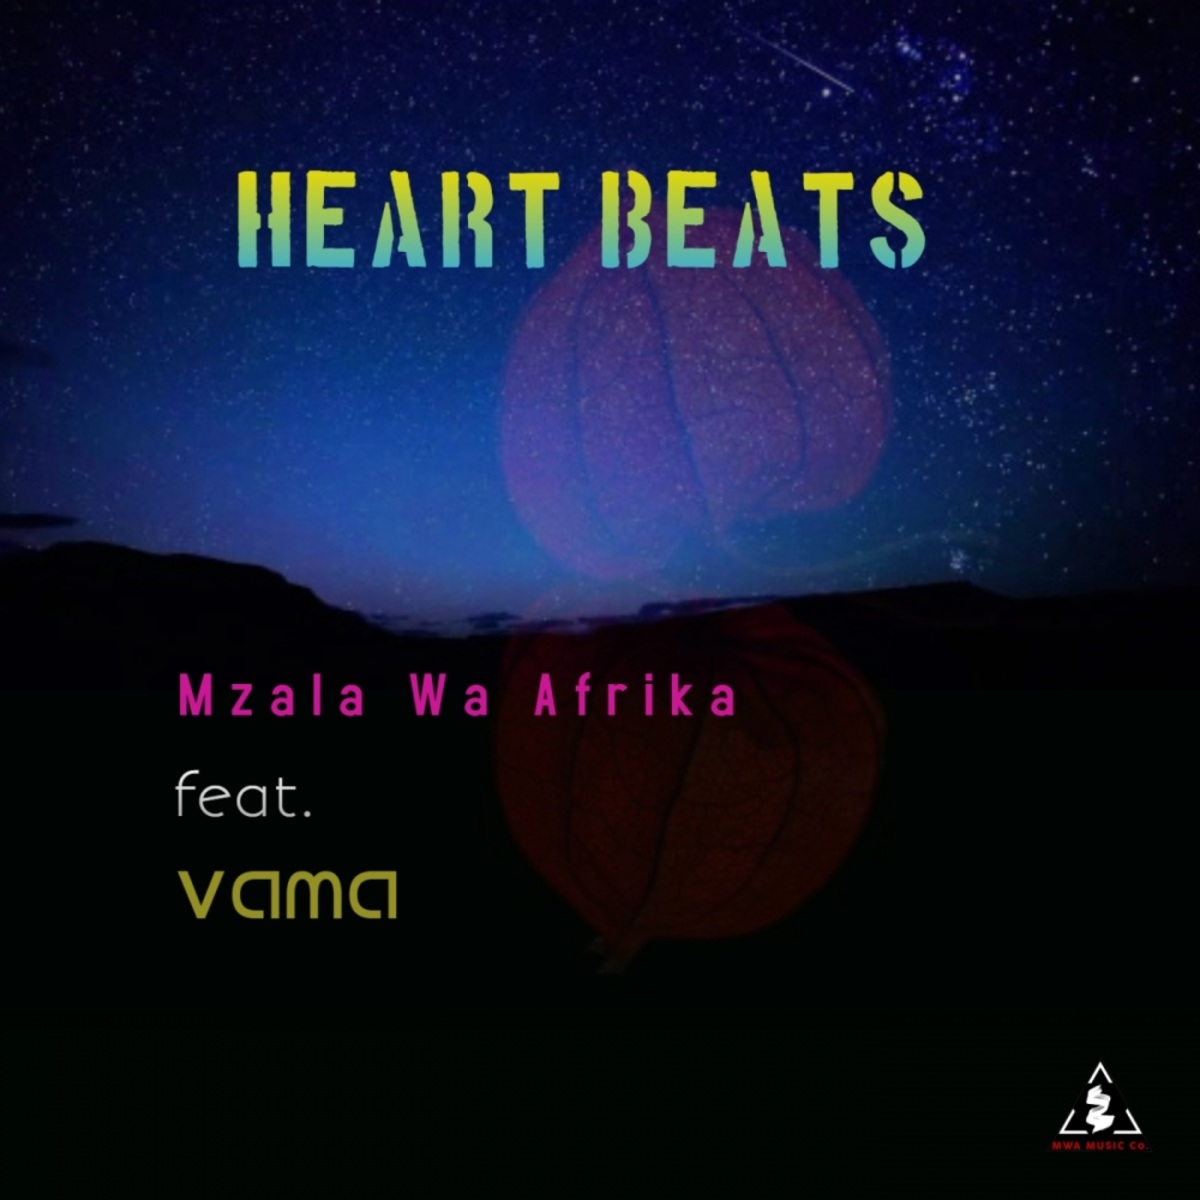 Mzala Wa Afrika - Heart Beats / MWA Music CO.